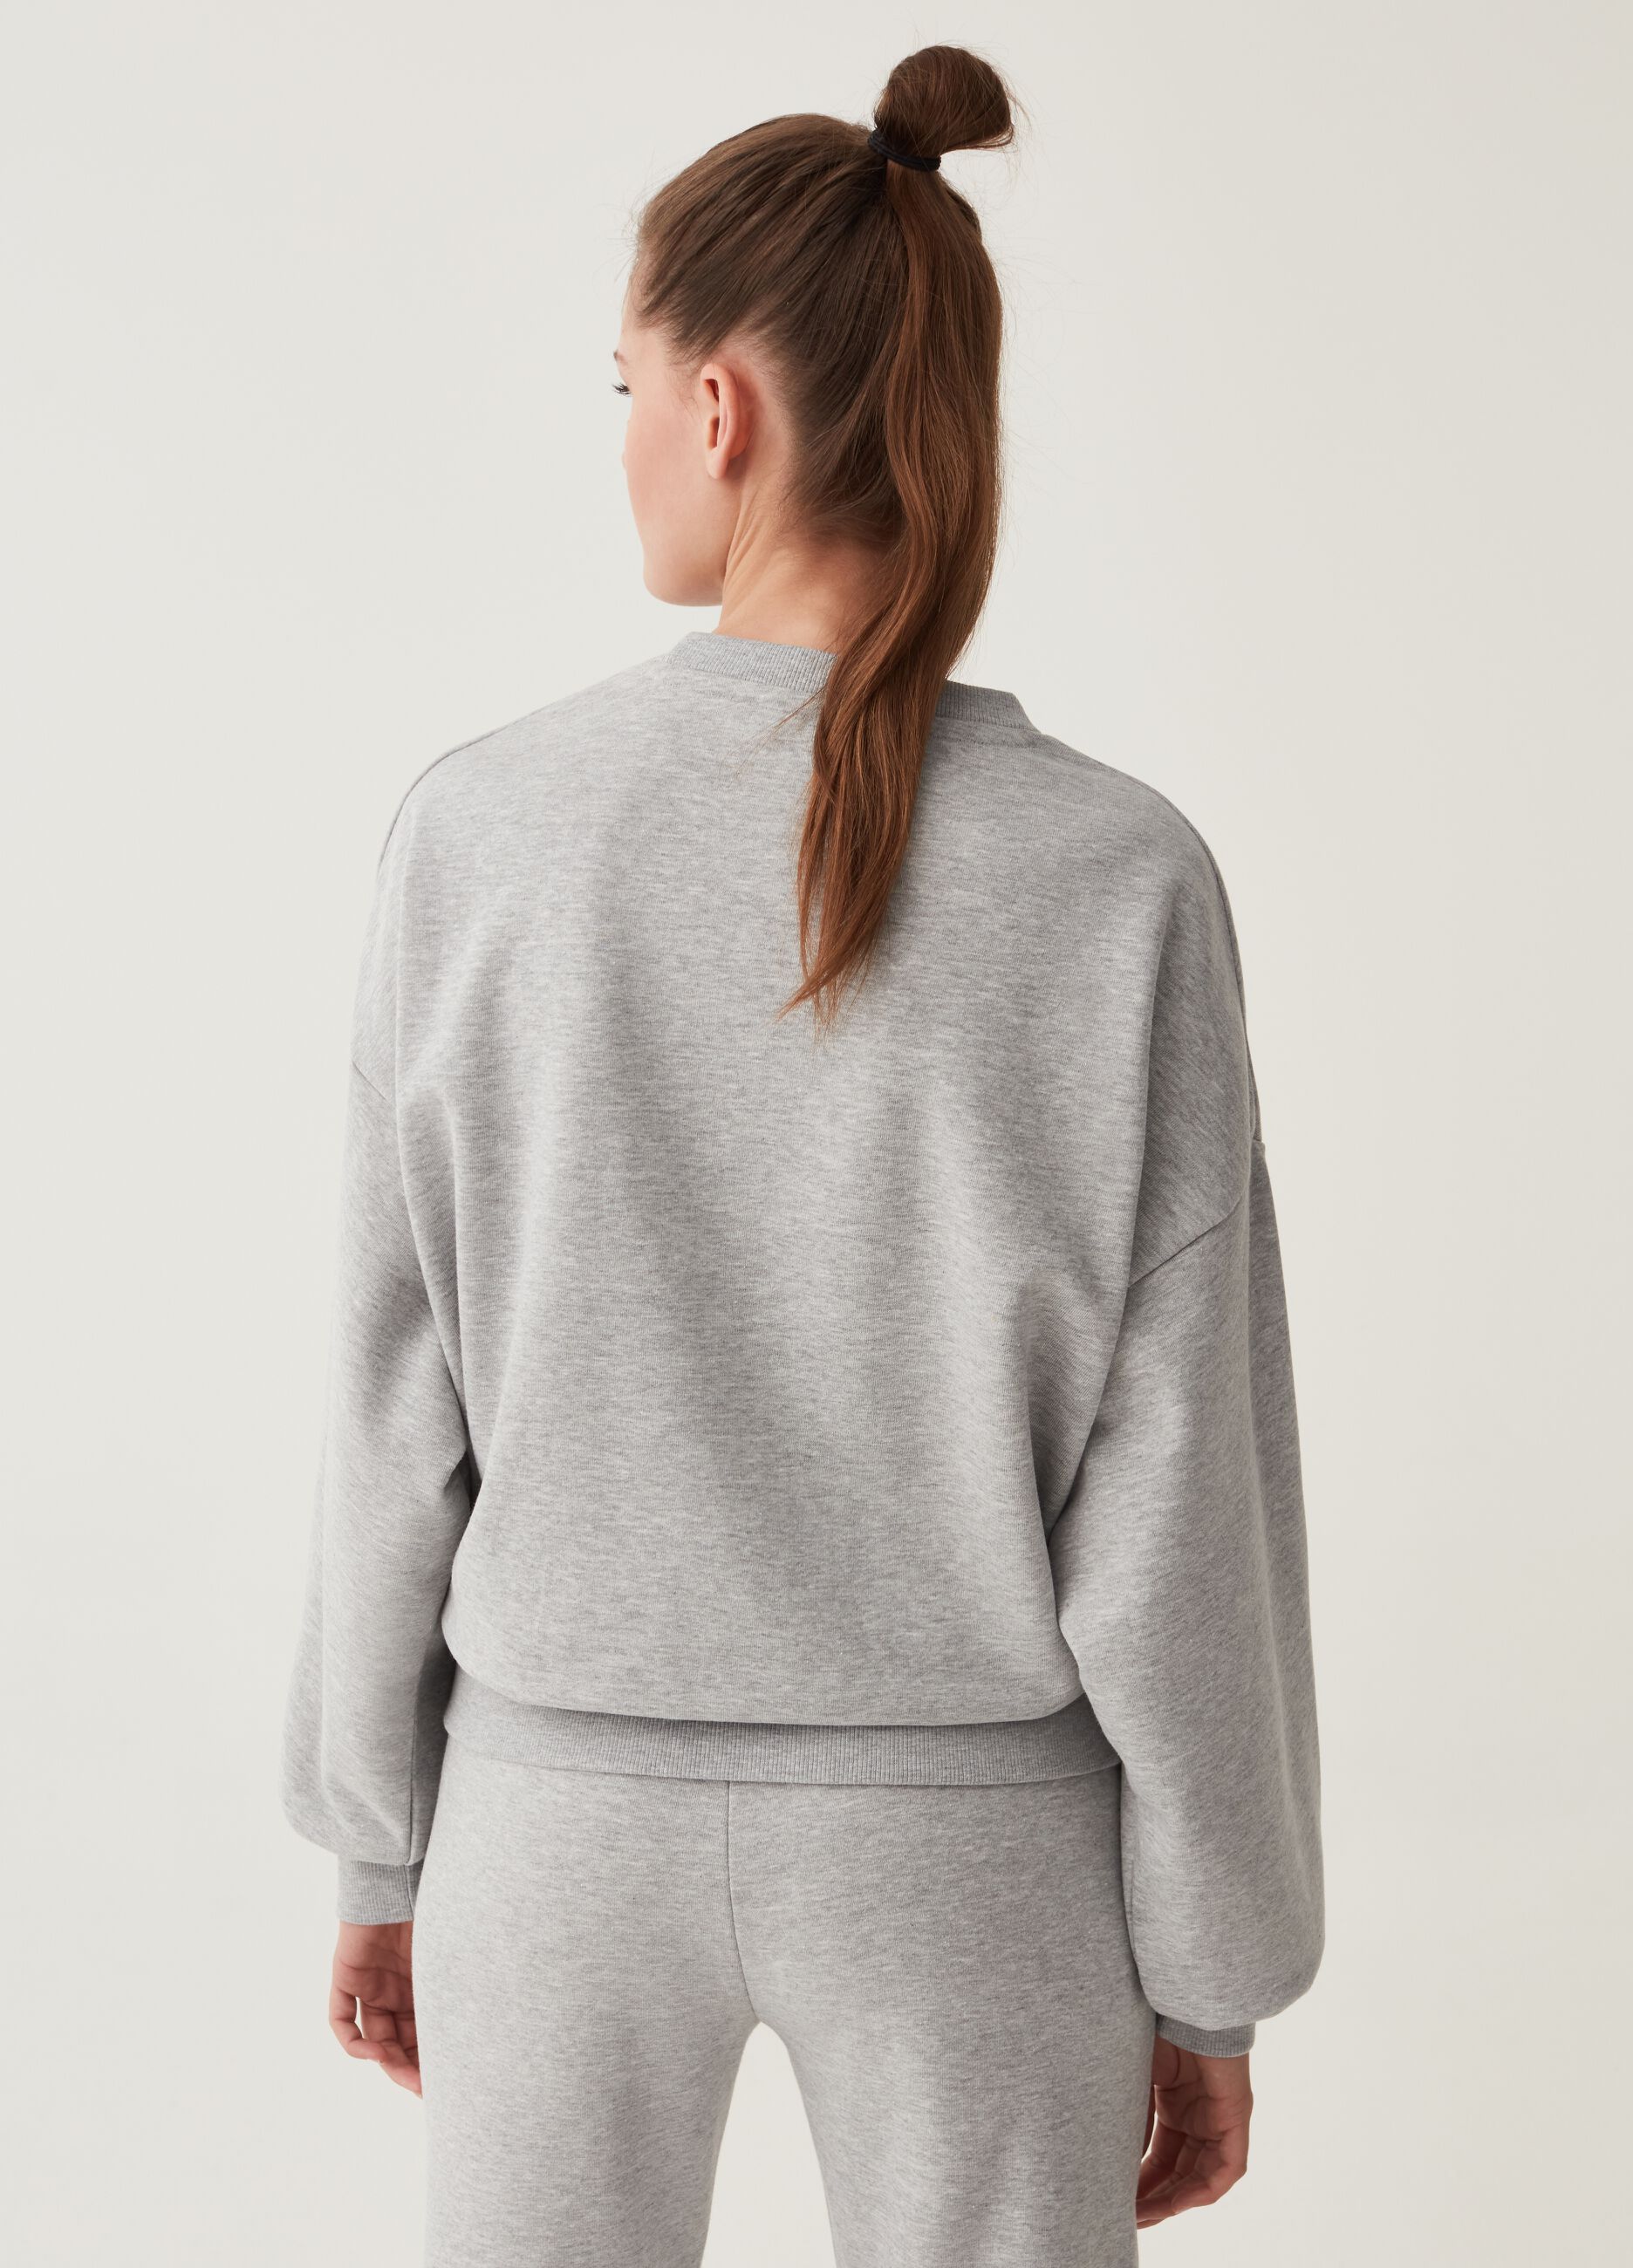 Oversize sweatshirt with Everlast embroidery